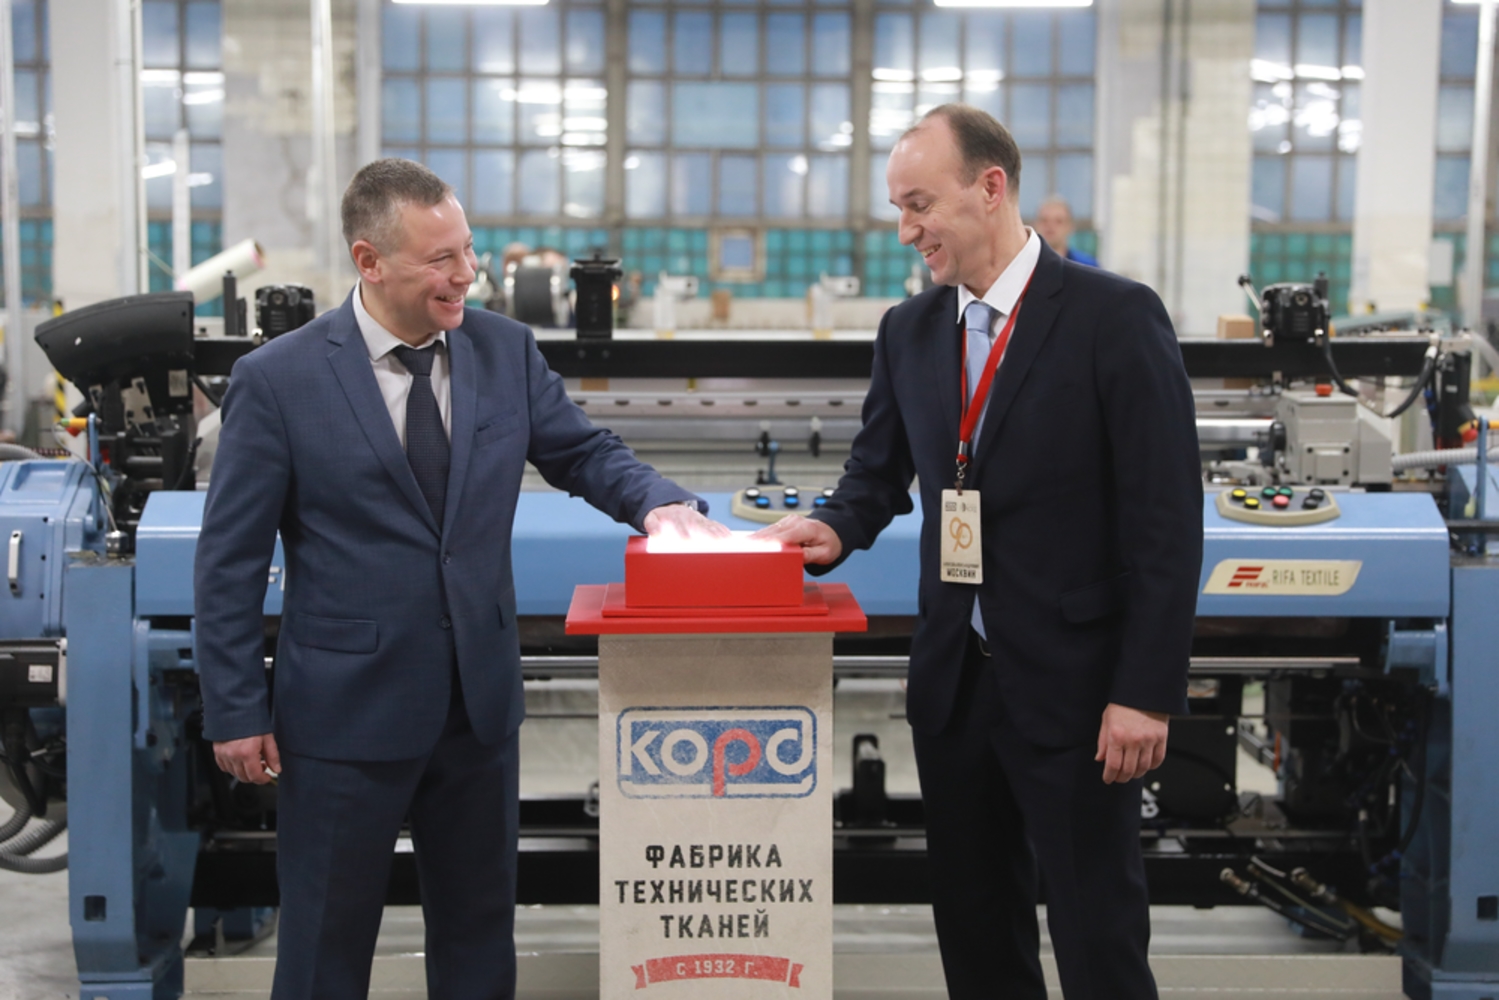 Михаил Евраев принял участие в запуске новой линии станков в АО «Корд»